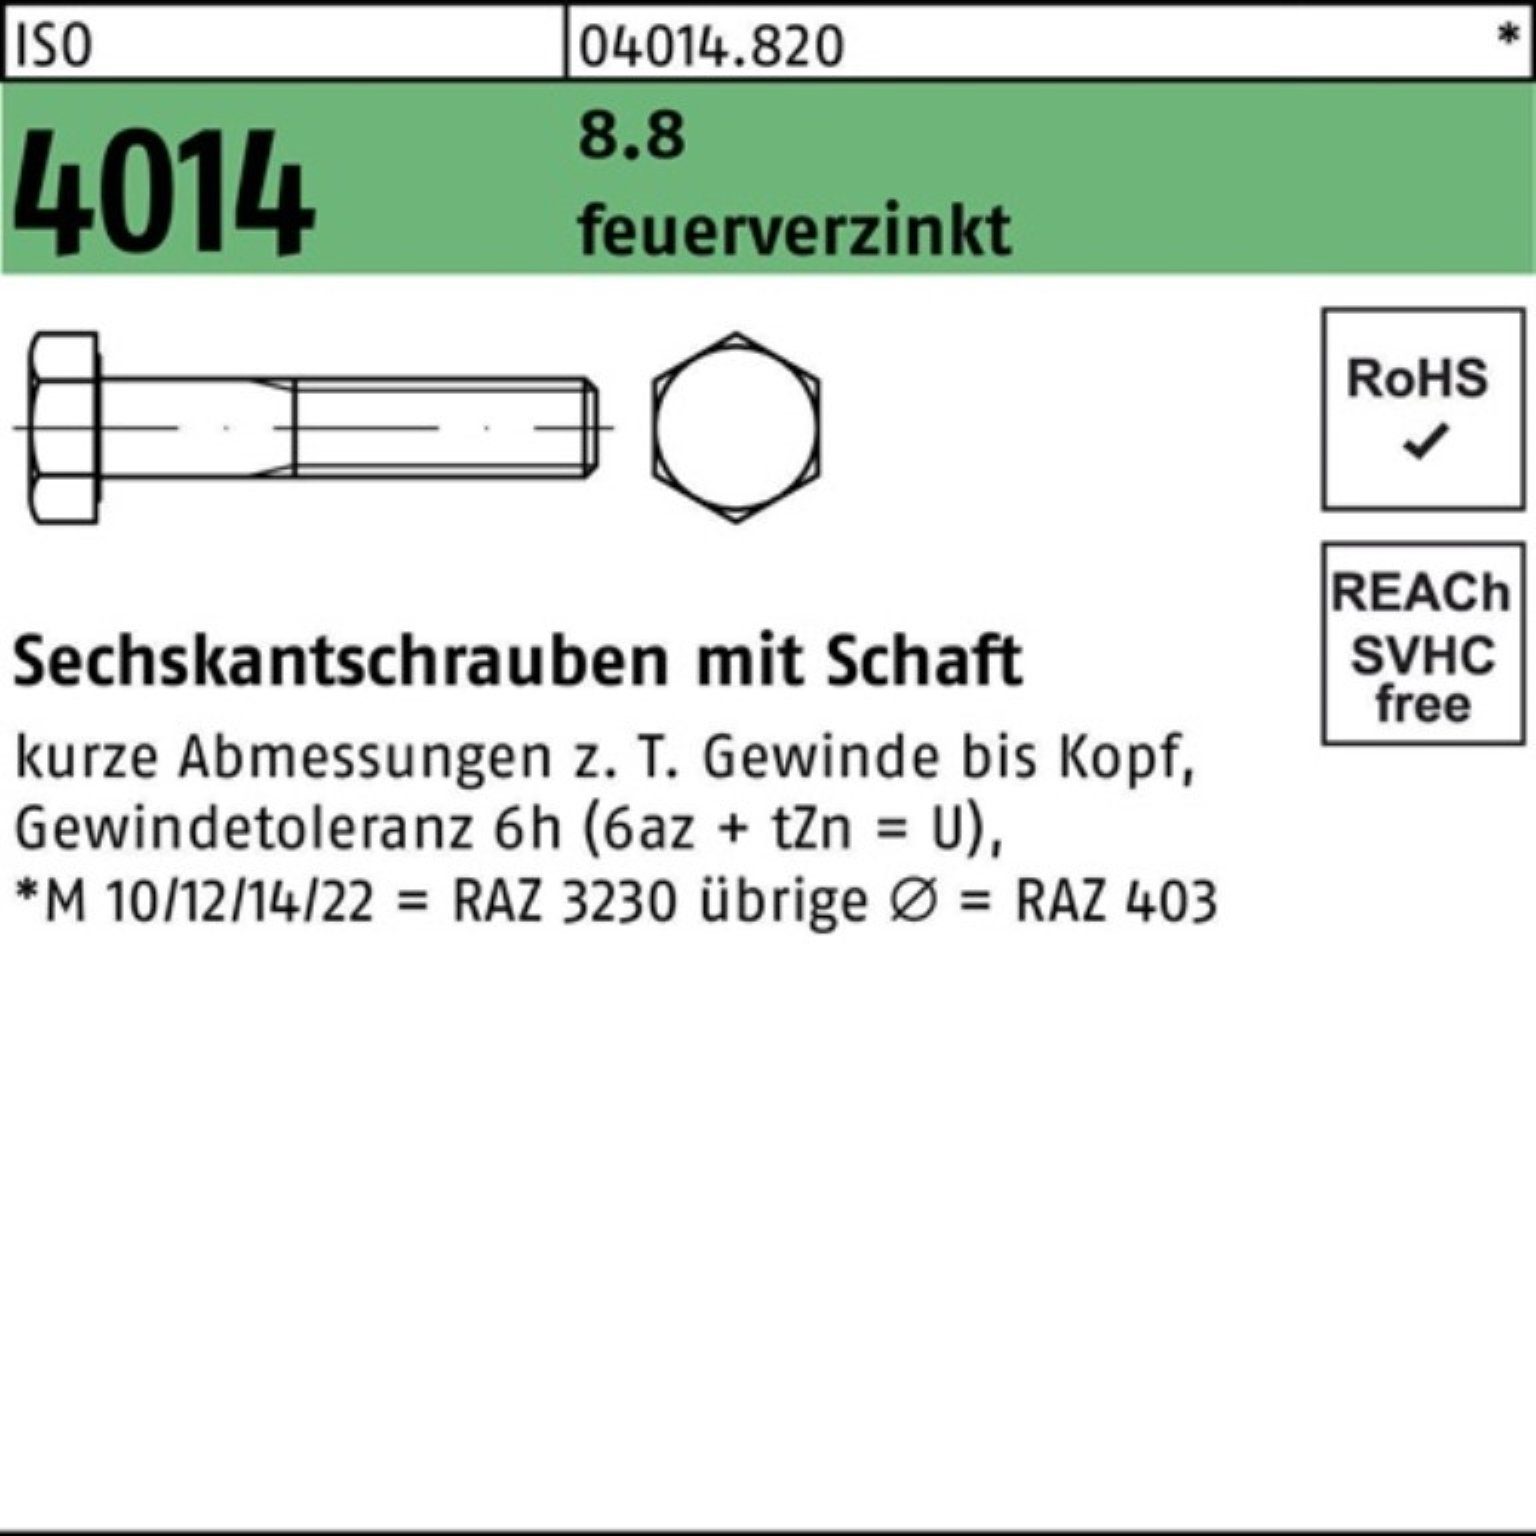 Bufab Sechskantschraube 100er Pack Sechskantschraube ISO 4014 Schaft M24x 75 8.8 feuerverz. 25